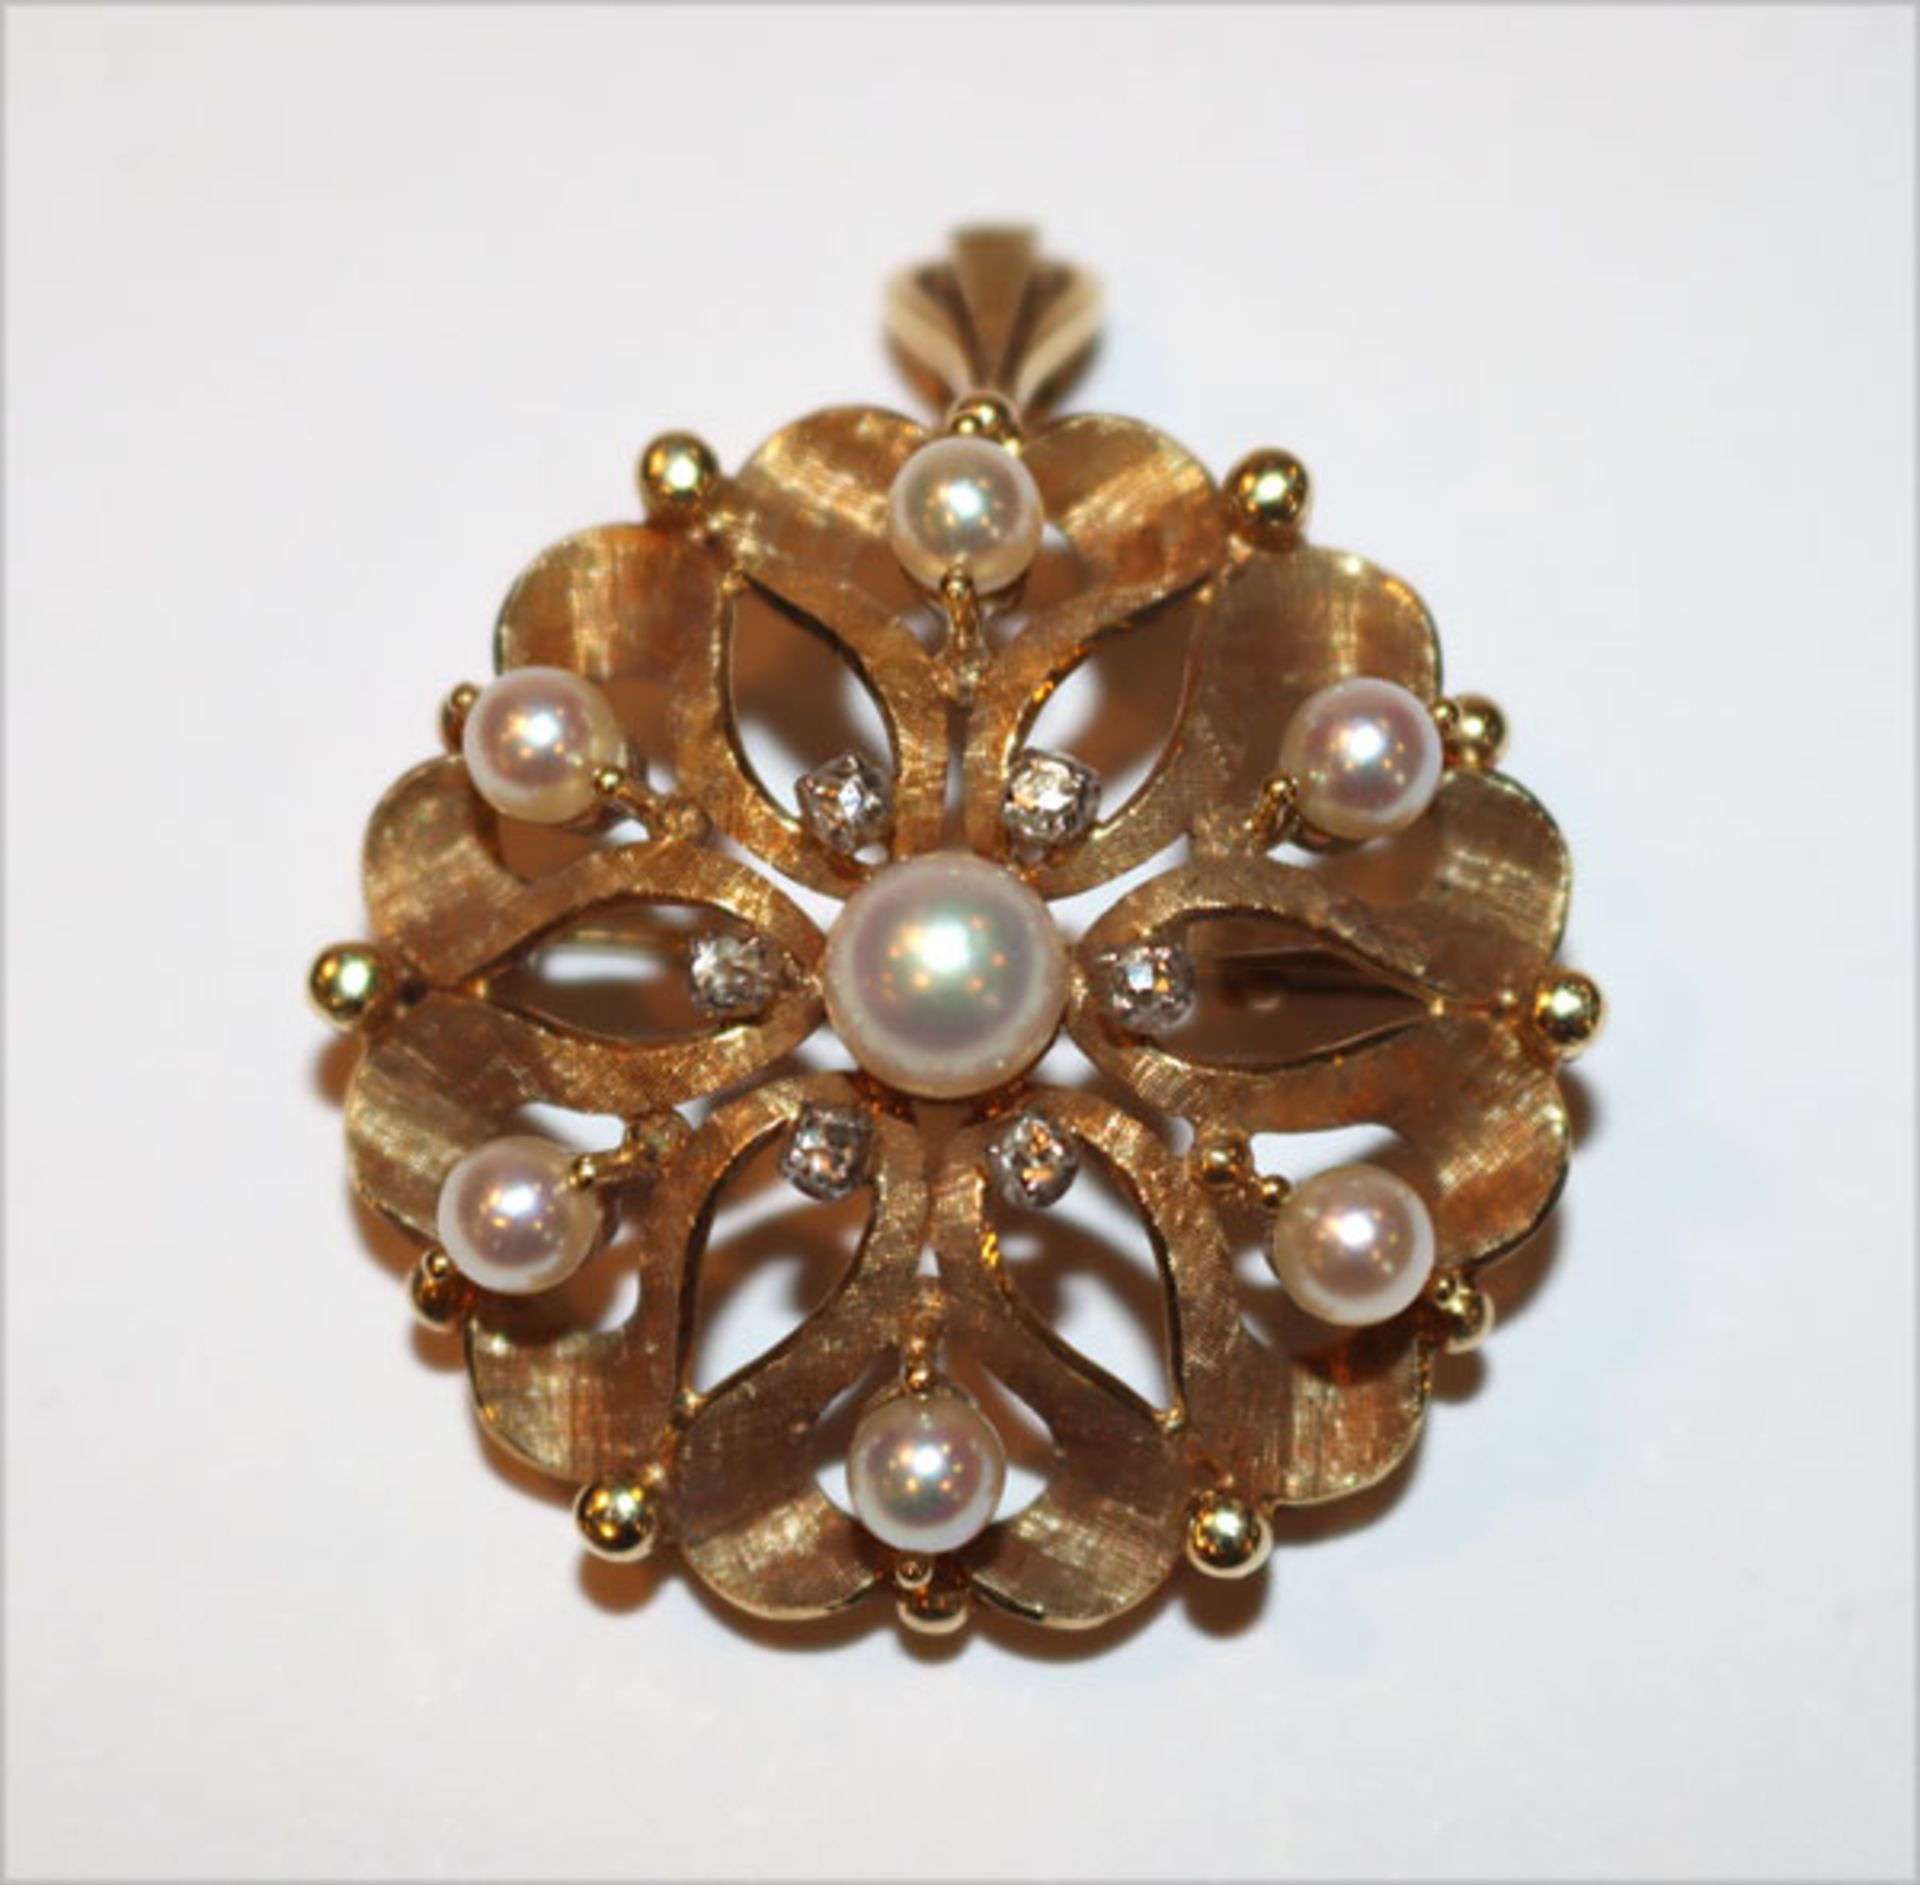 14 k Gelbgold Brosche/Anhänger mit 6 Diamanten und 7 Perlen verziert, Gold teils mattiert, 12 gr., D